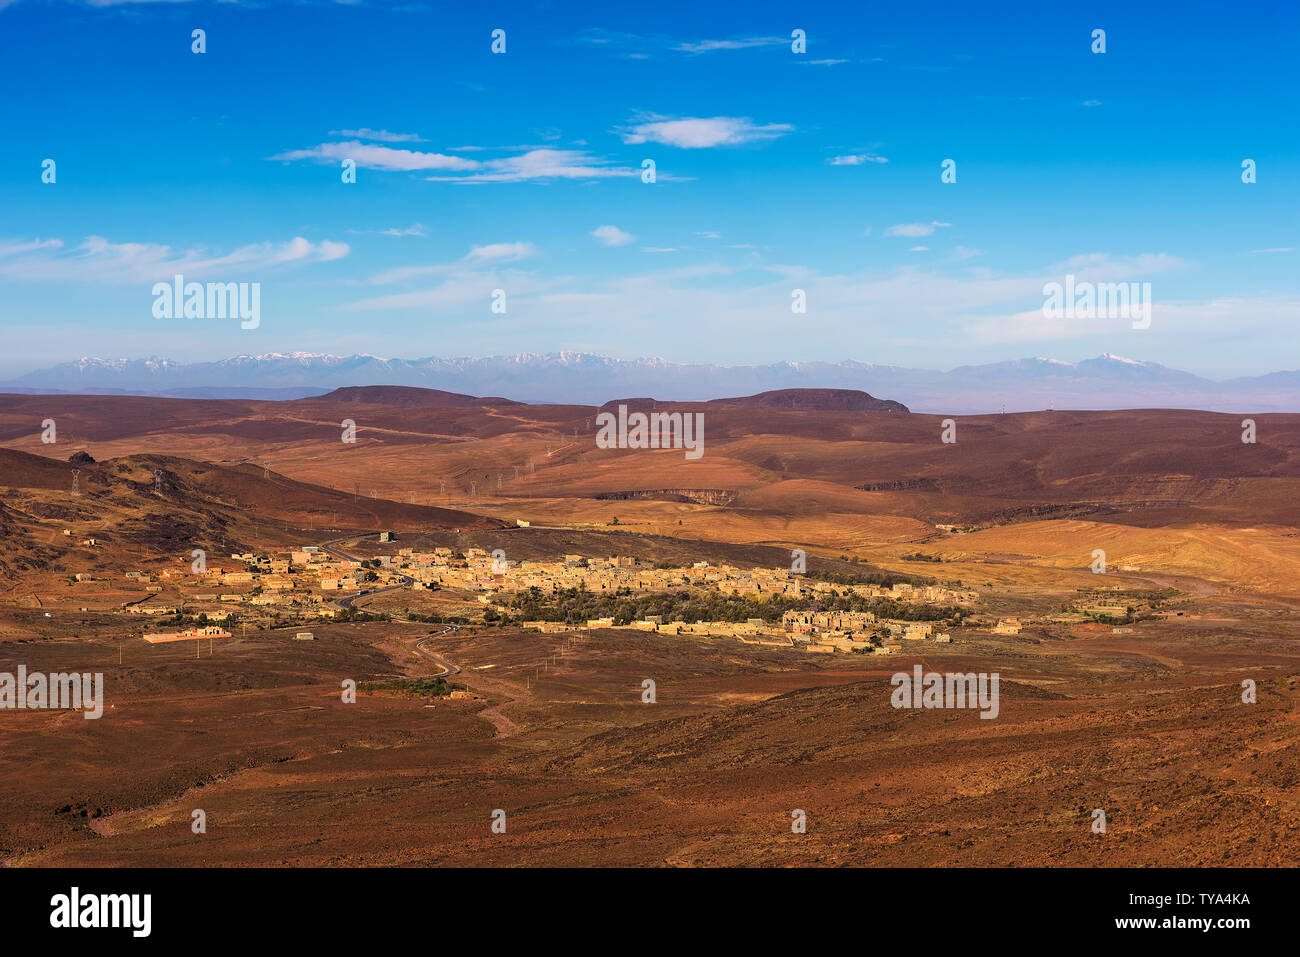 Ver más de una aldea de Marruecos con nevados de las montañas del Atlas en el fondo Foto de stock